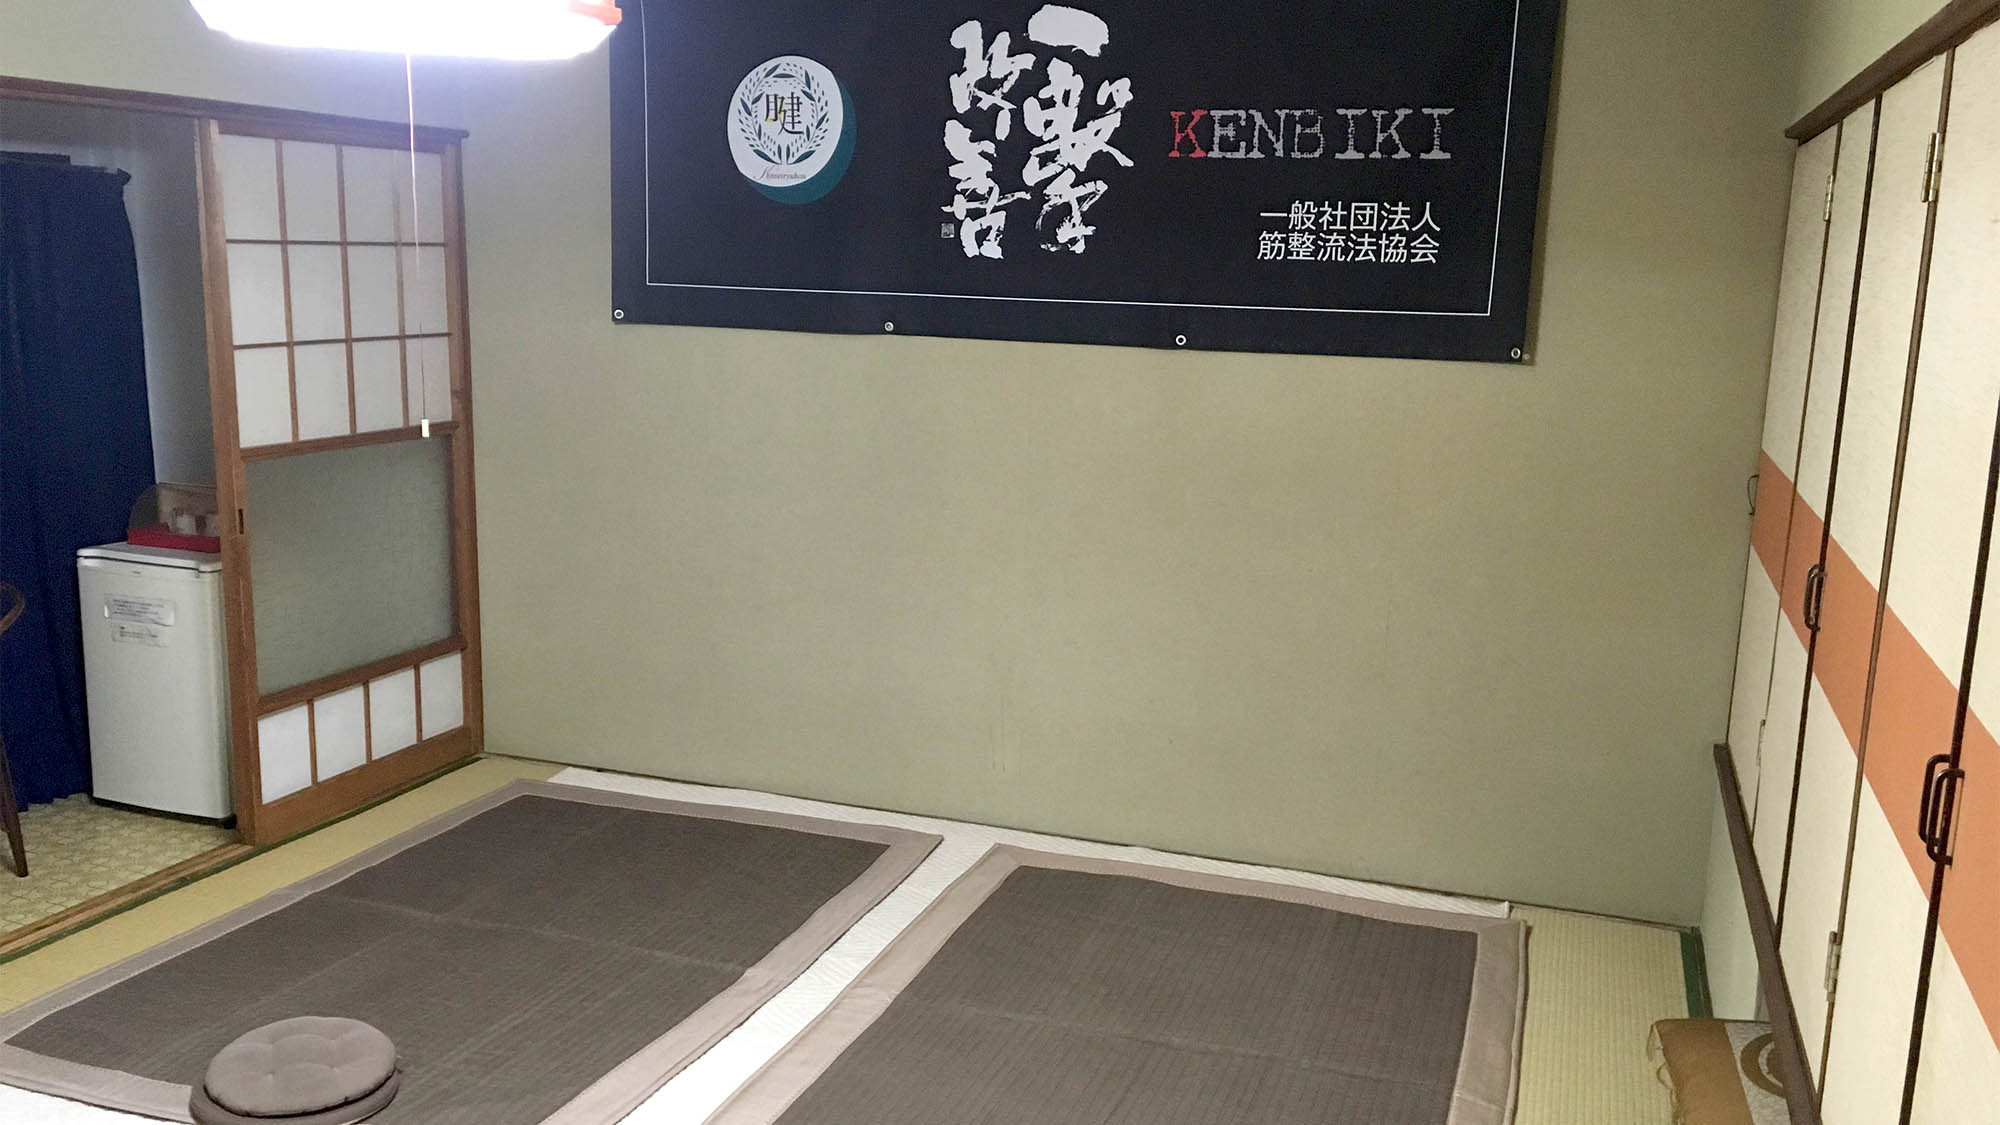 ・＜マッサージ＞当館では草津温泉道場腱引き師の施術を受けられます